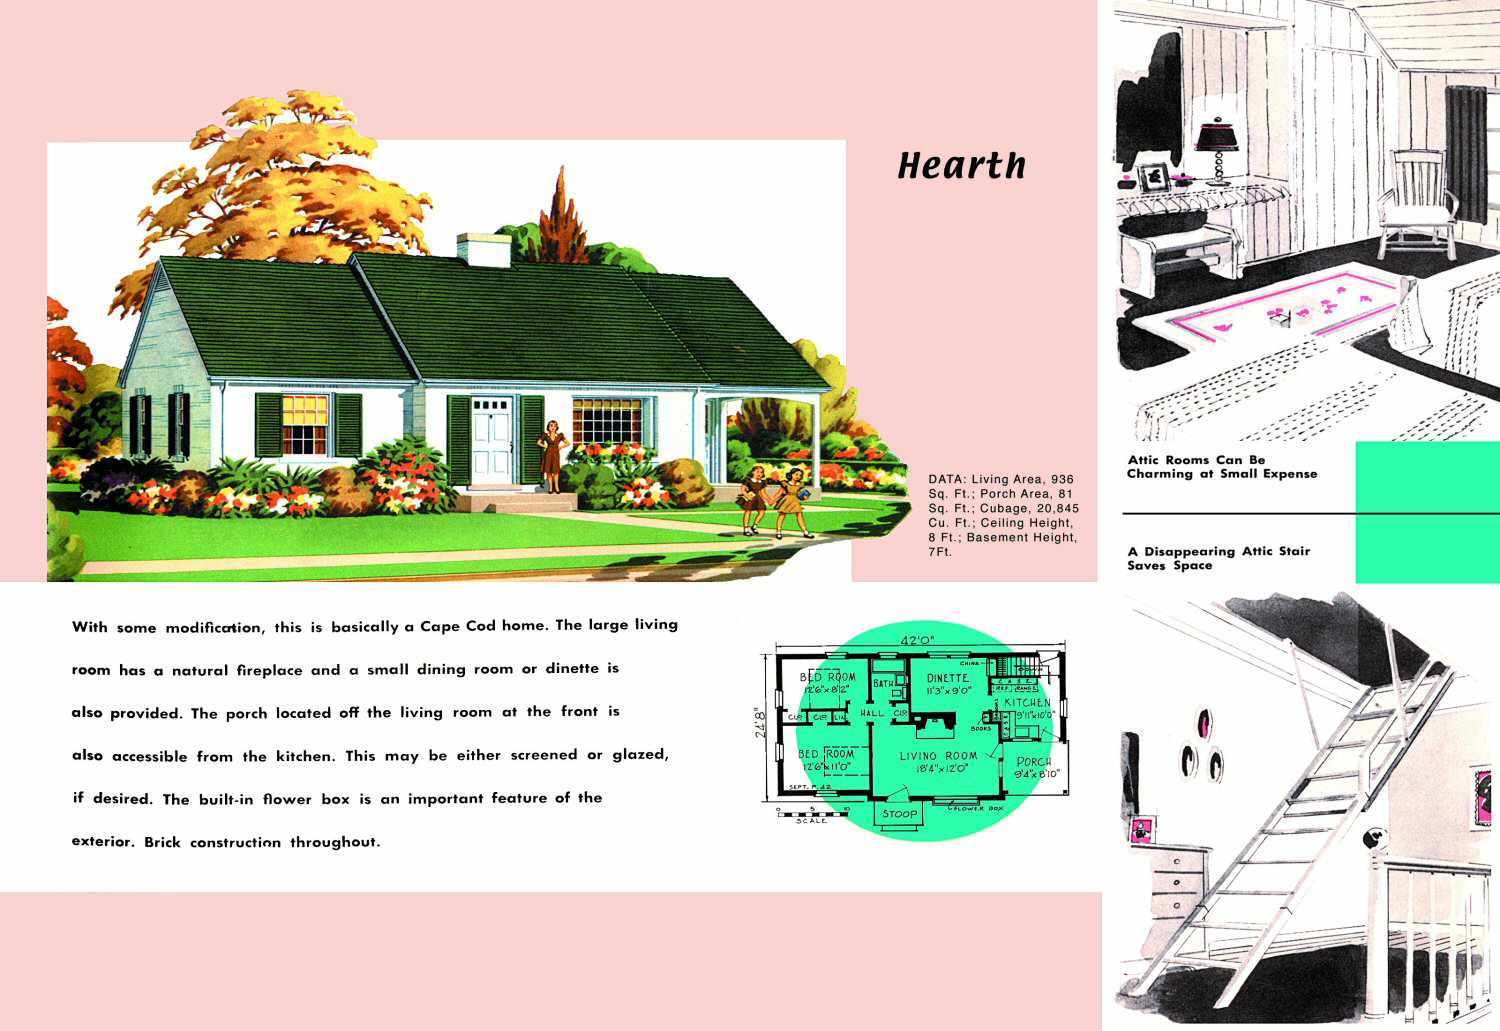 1950er Jahre Grundriss und Rendering von Cape Cod Haus namens Hearth